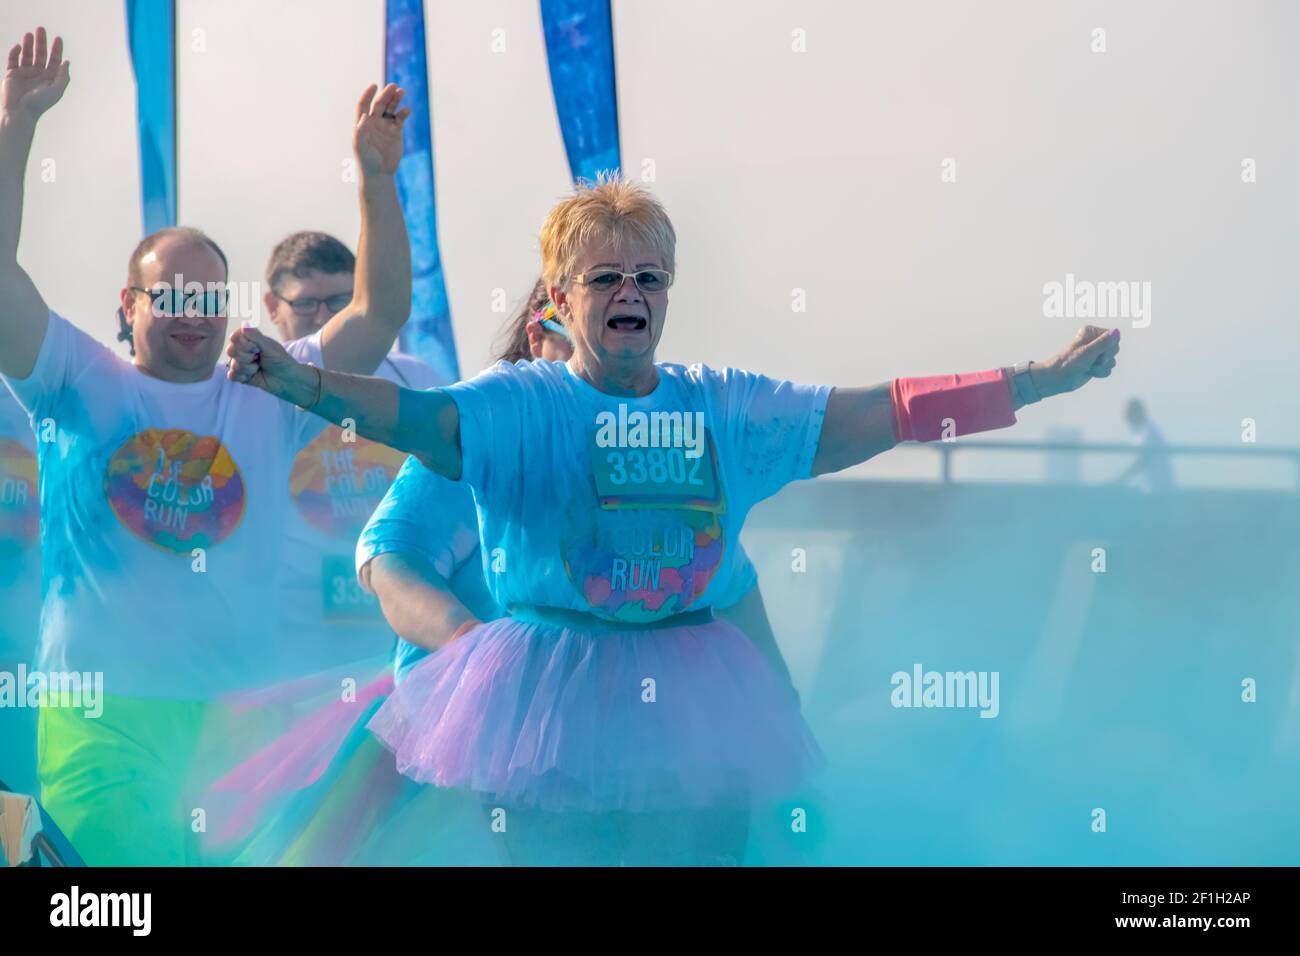 4 - 6 - 2019 -Tulsa USA zwei Läufer - Auf eine ältere Bürgerin Frau in einem Tutu und ein Mann hinter ihr - halten Sie ihre Arme hoch, wie sie Durch gefärbtes Pulver laufen Stockfoto